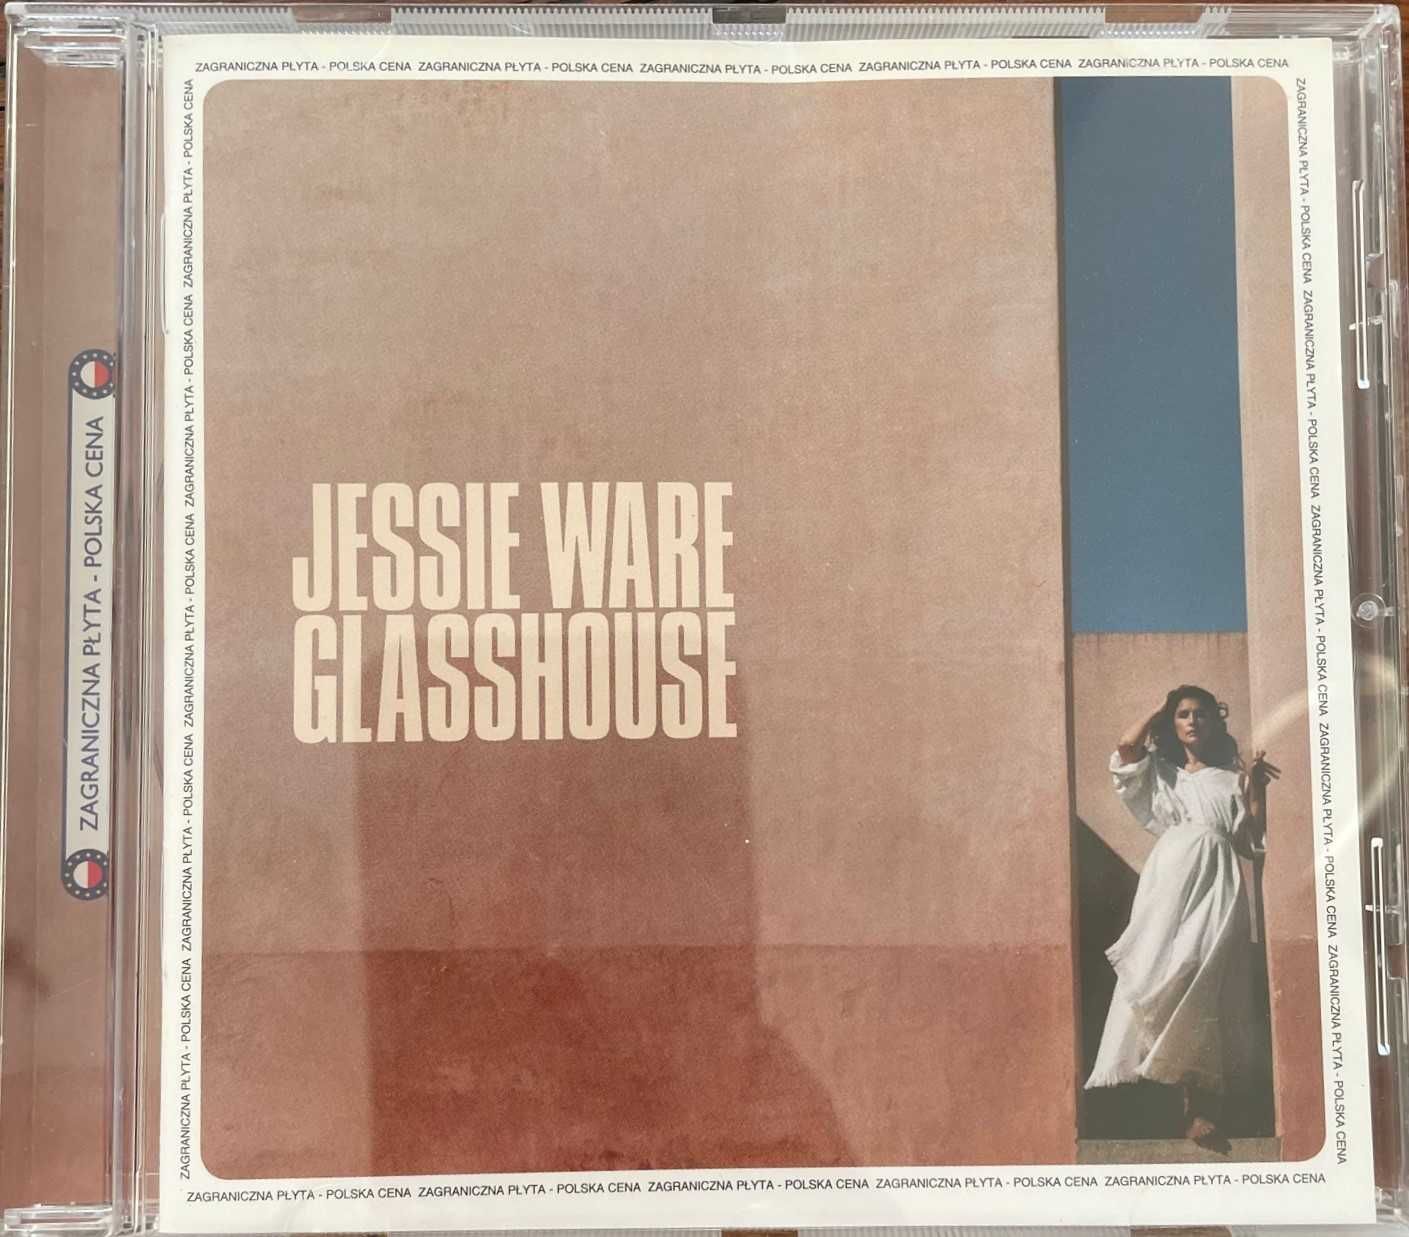 Płyta CD Jessie Ware "Glasshouse"